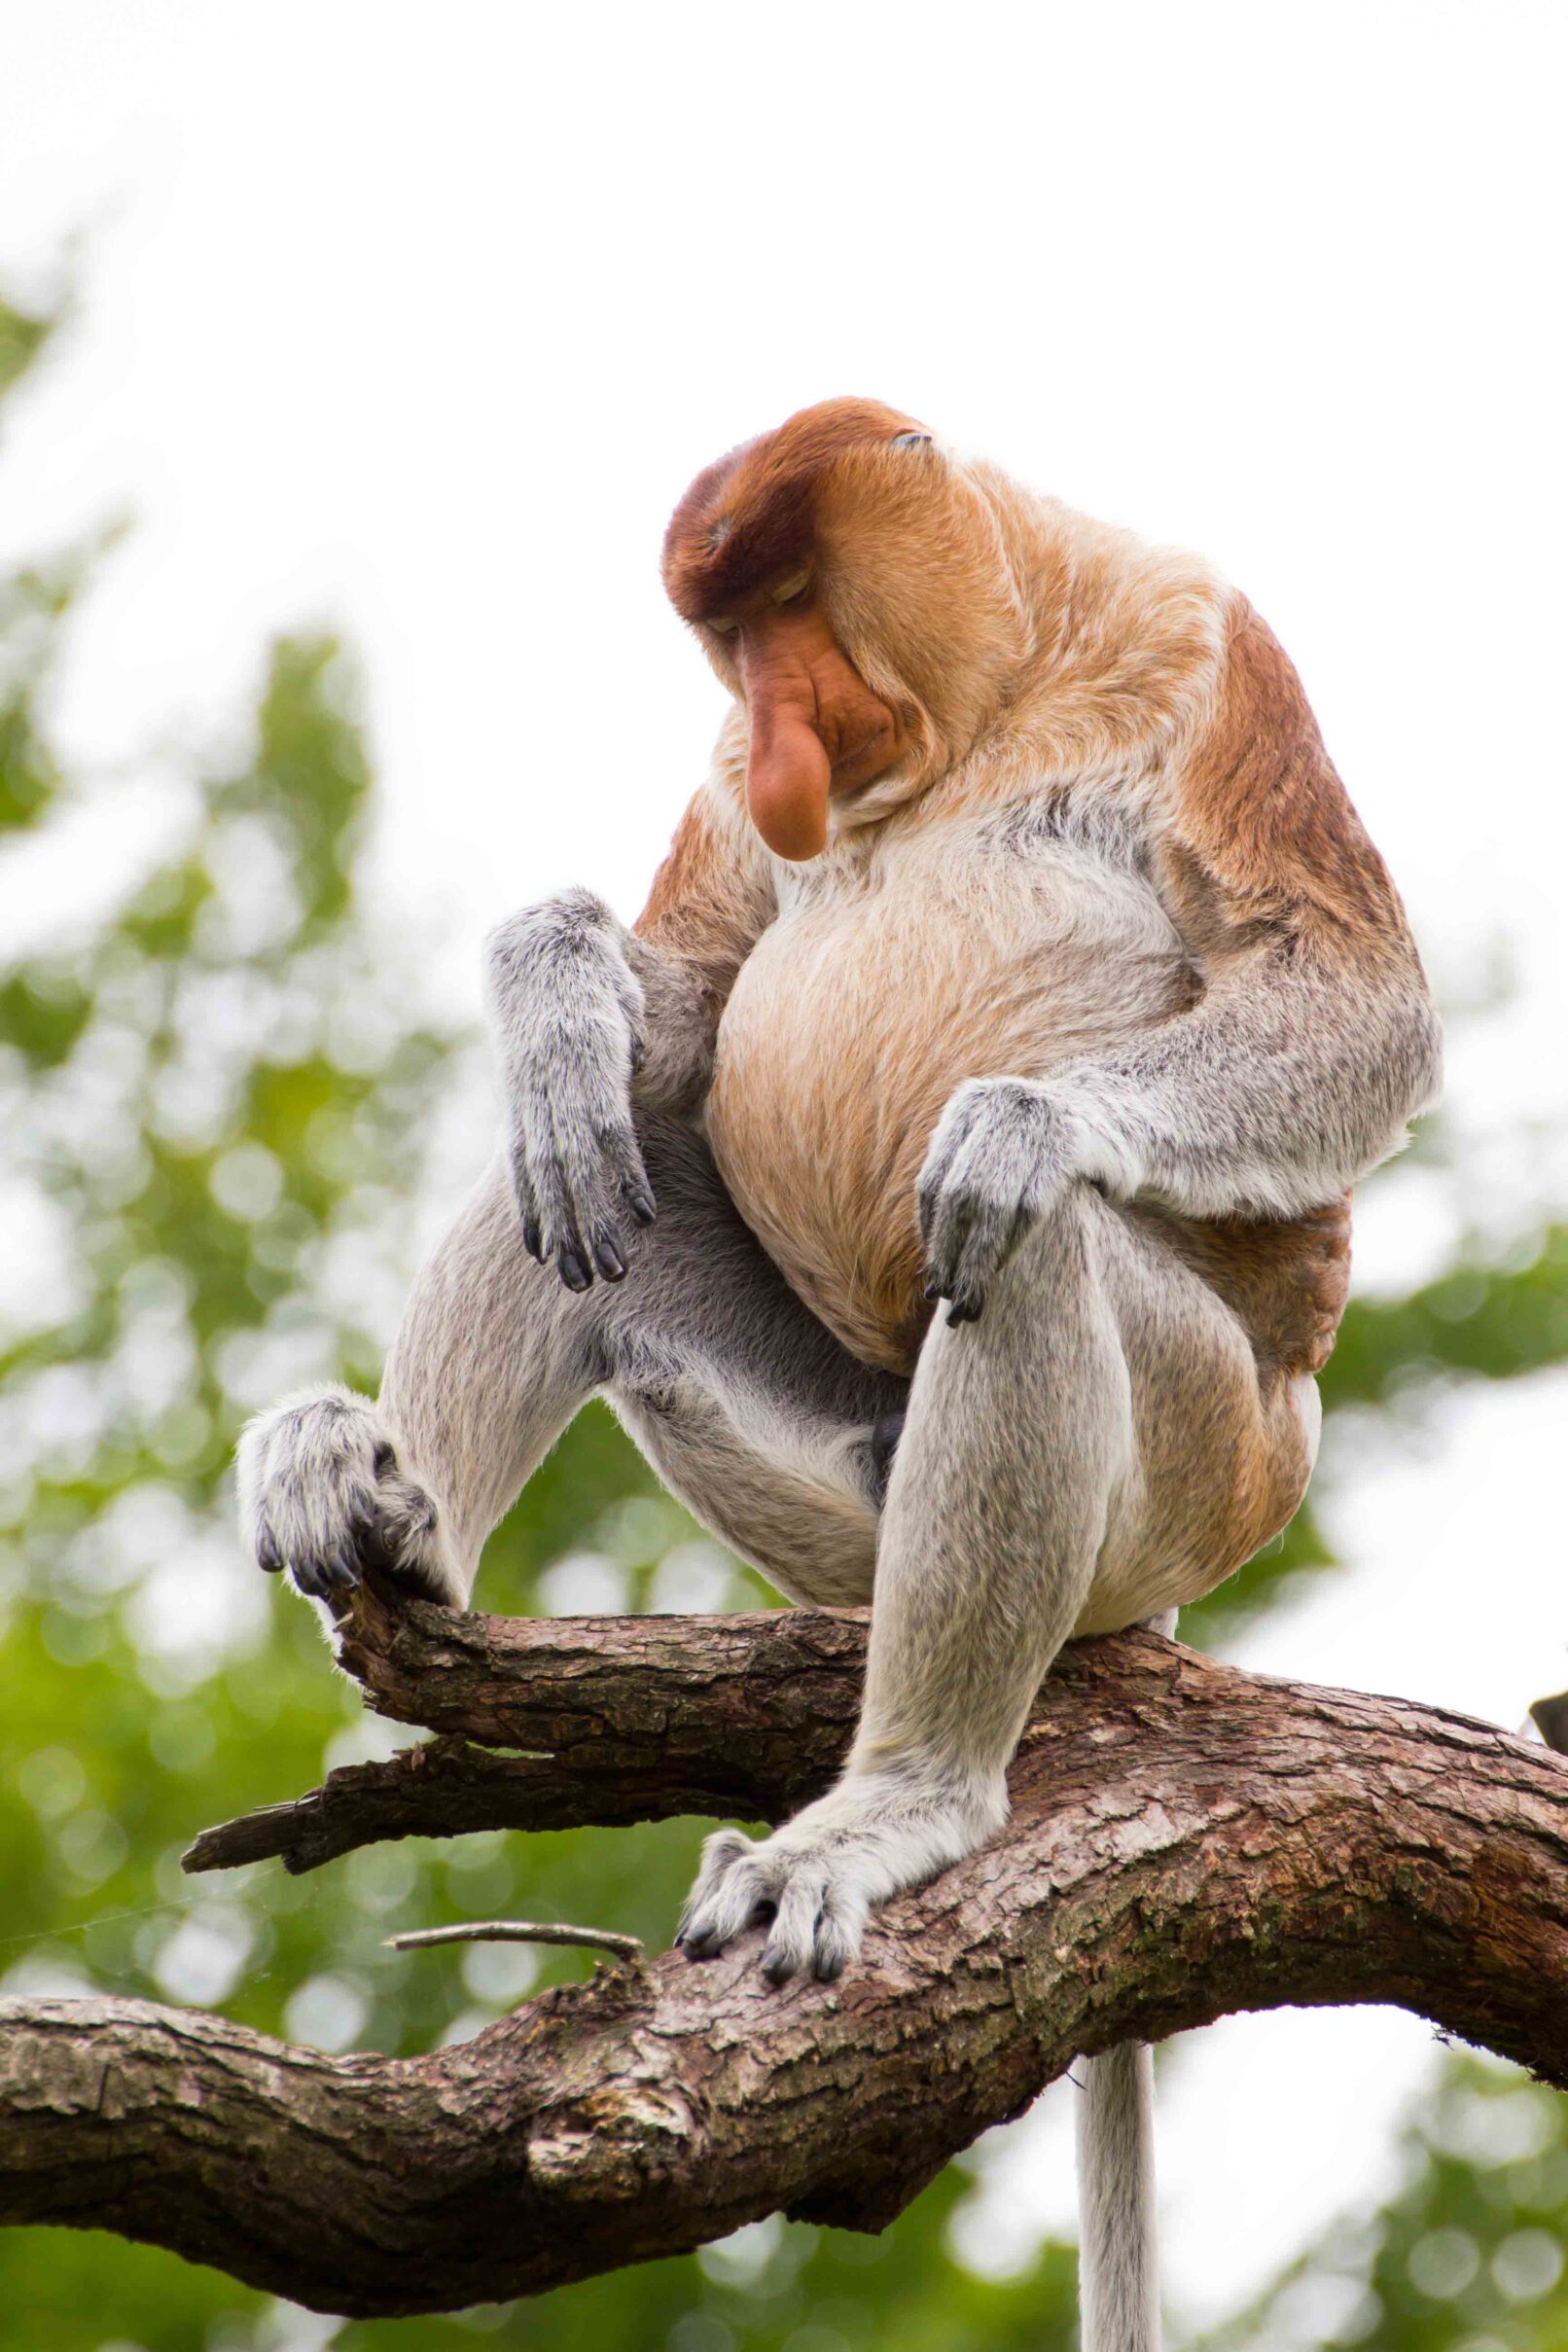 A sleeping Proboscis monkey in a tree